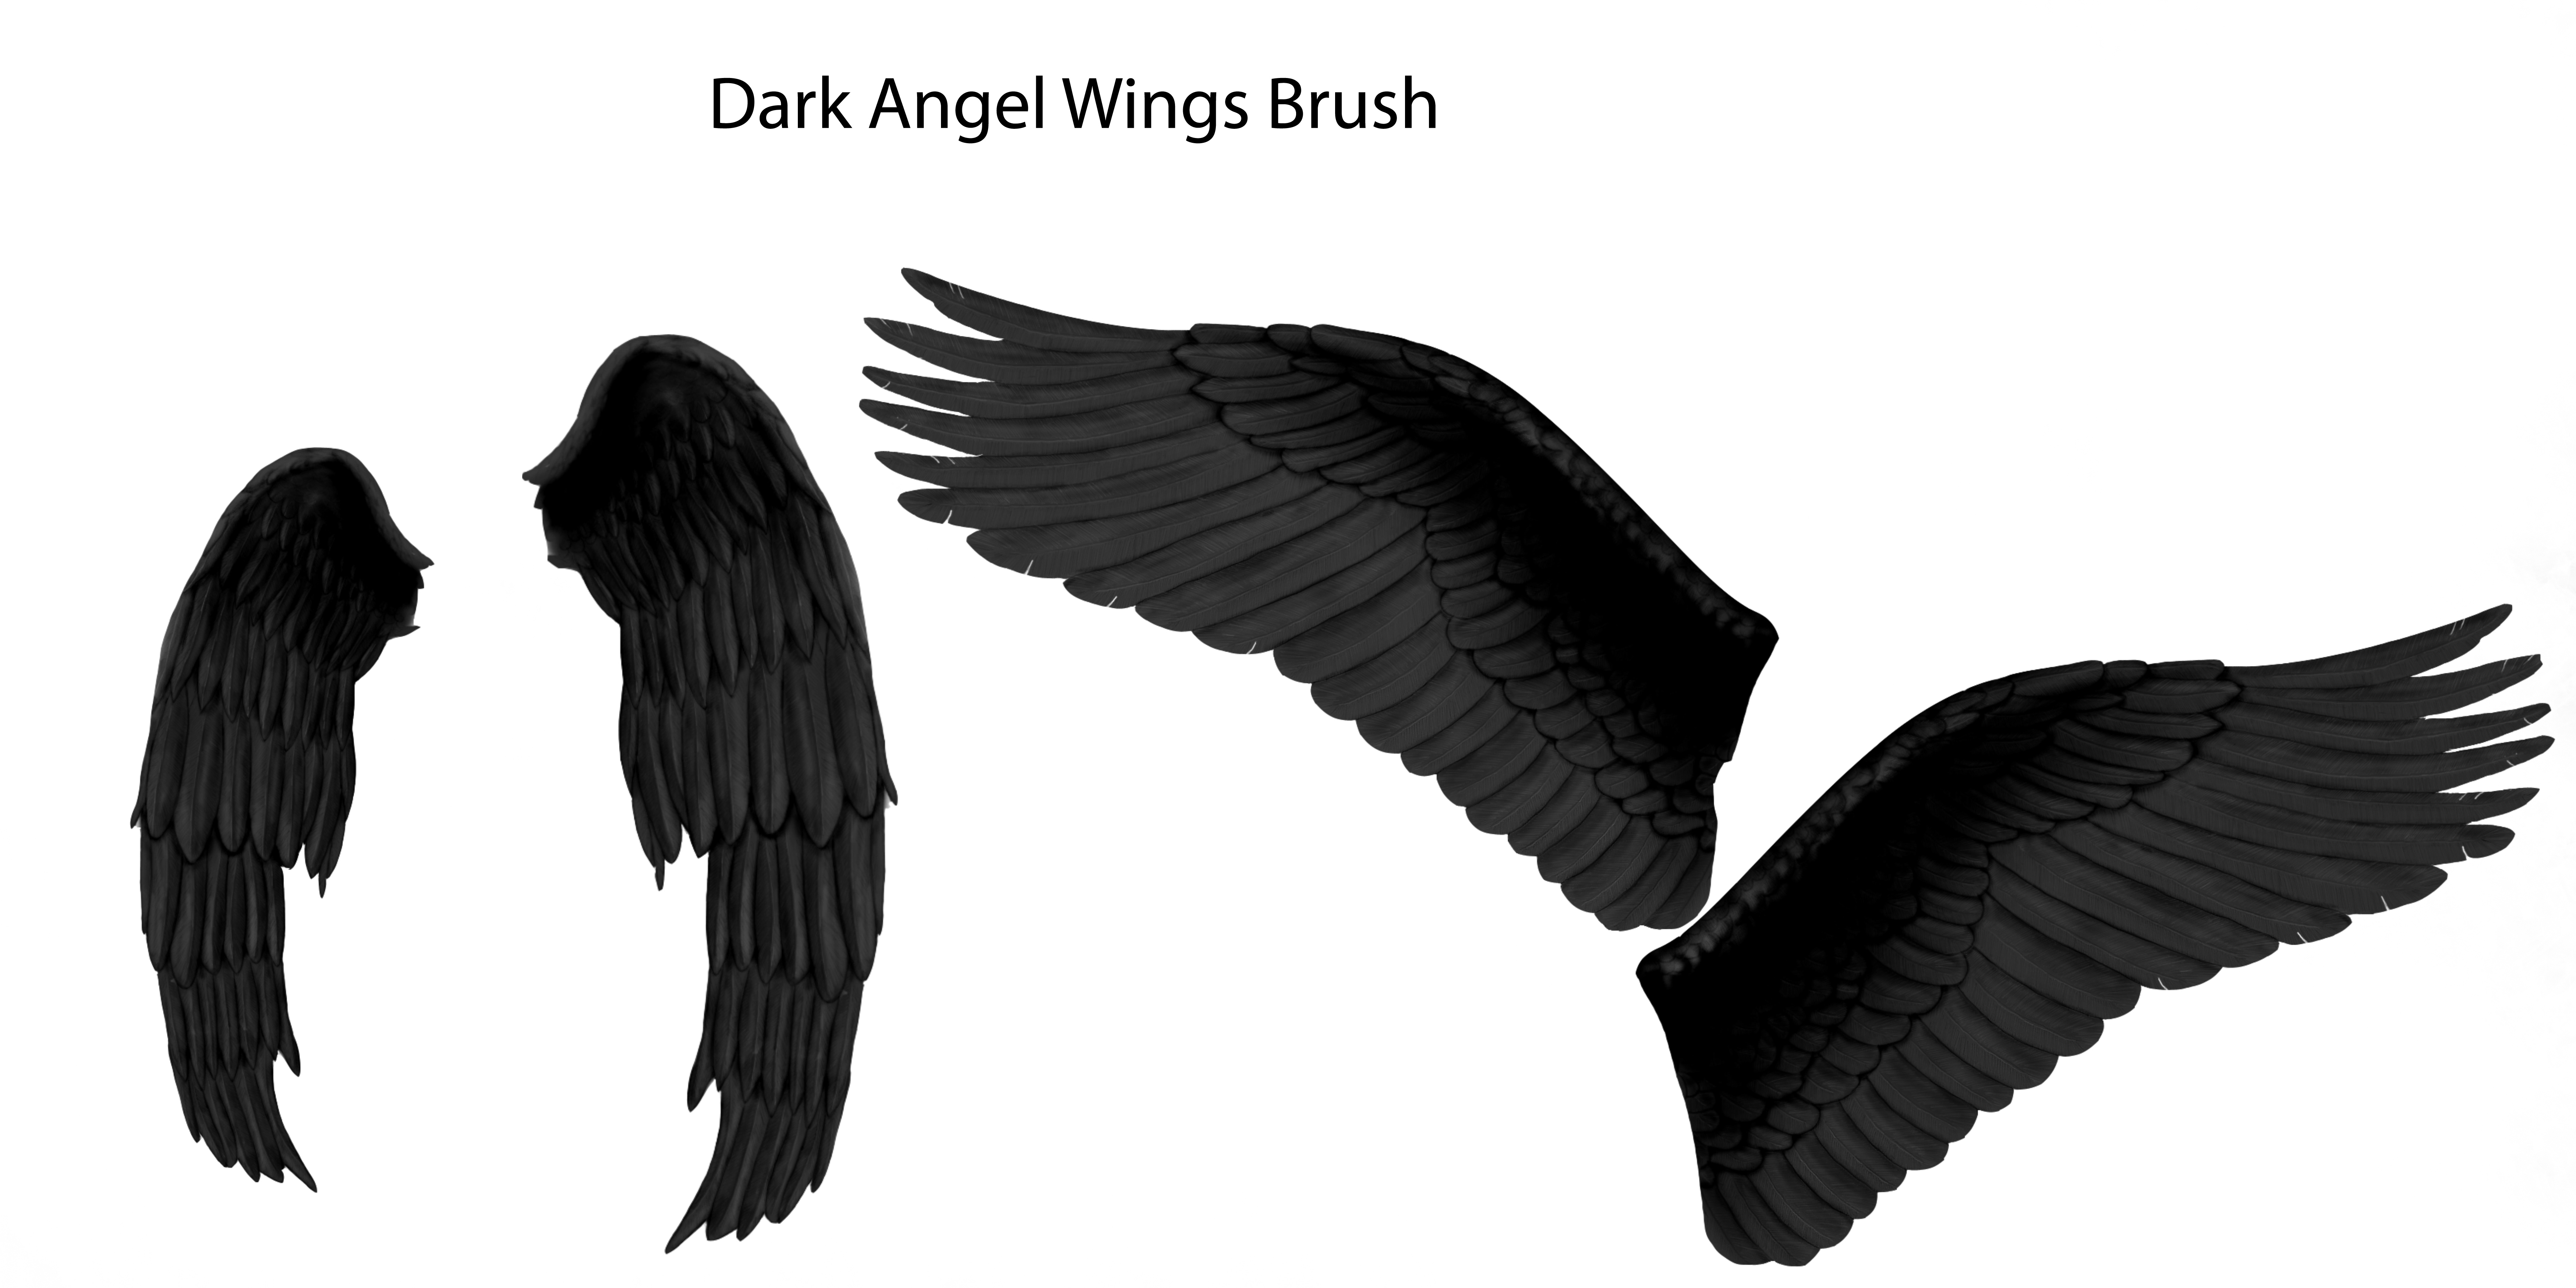 Dark Angel wings brush